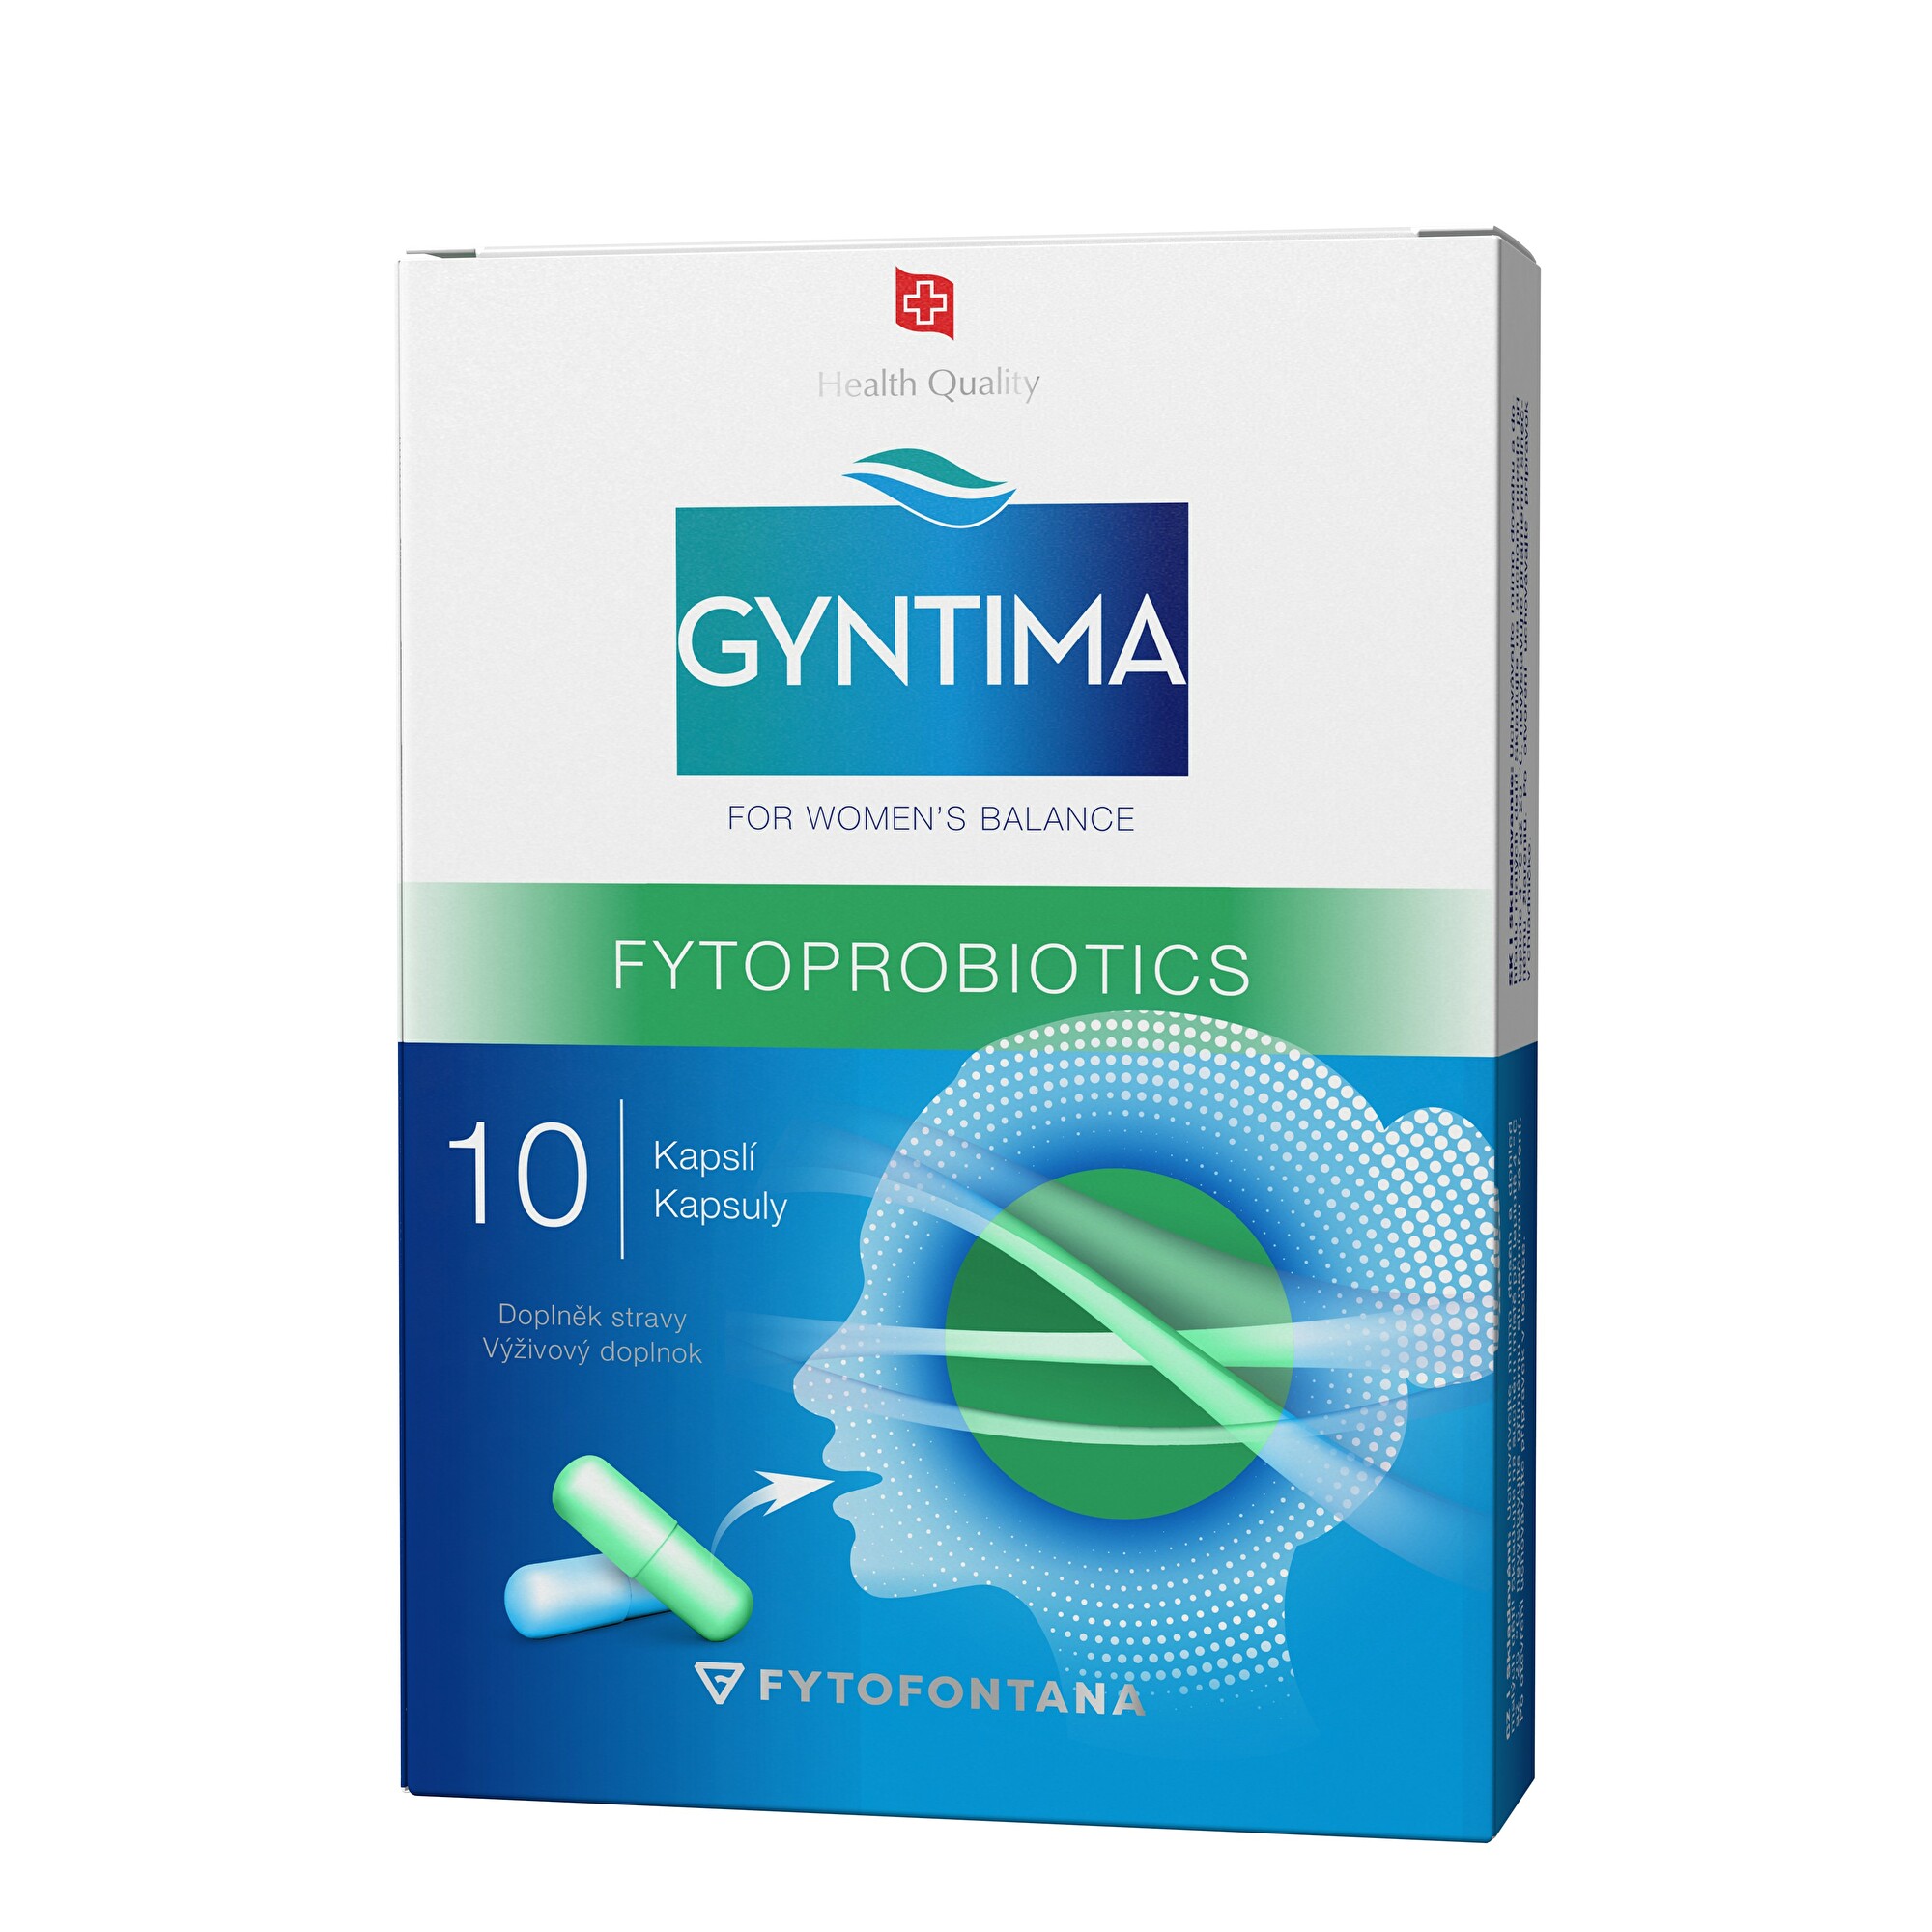 Zobrazit detail výrobku Fytofontana Gyntima fytoprobiotics 10 kapslí